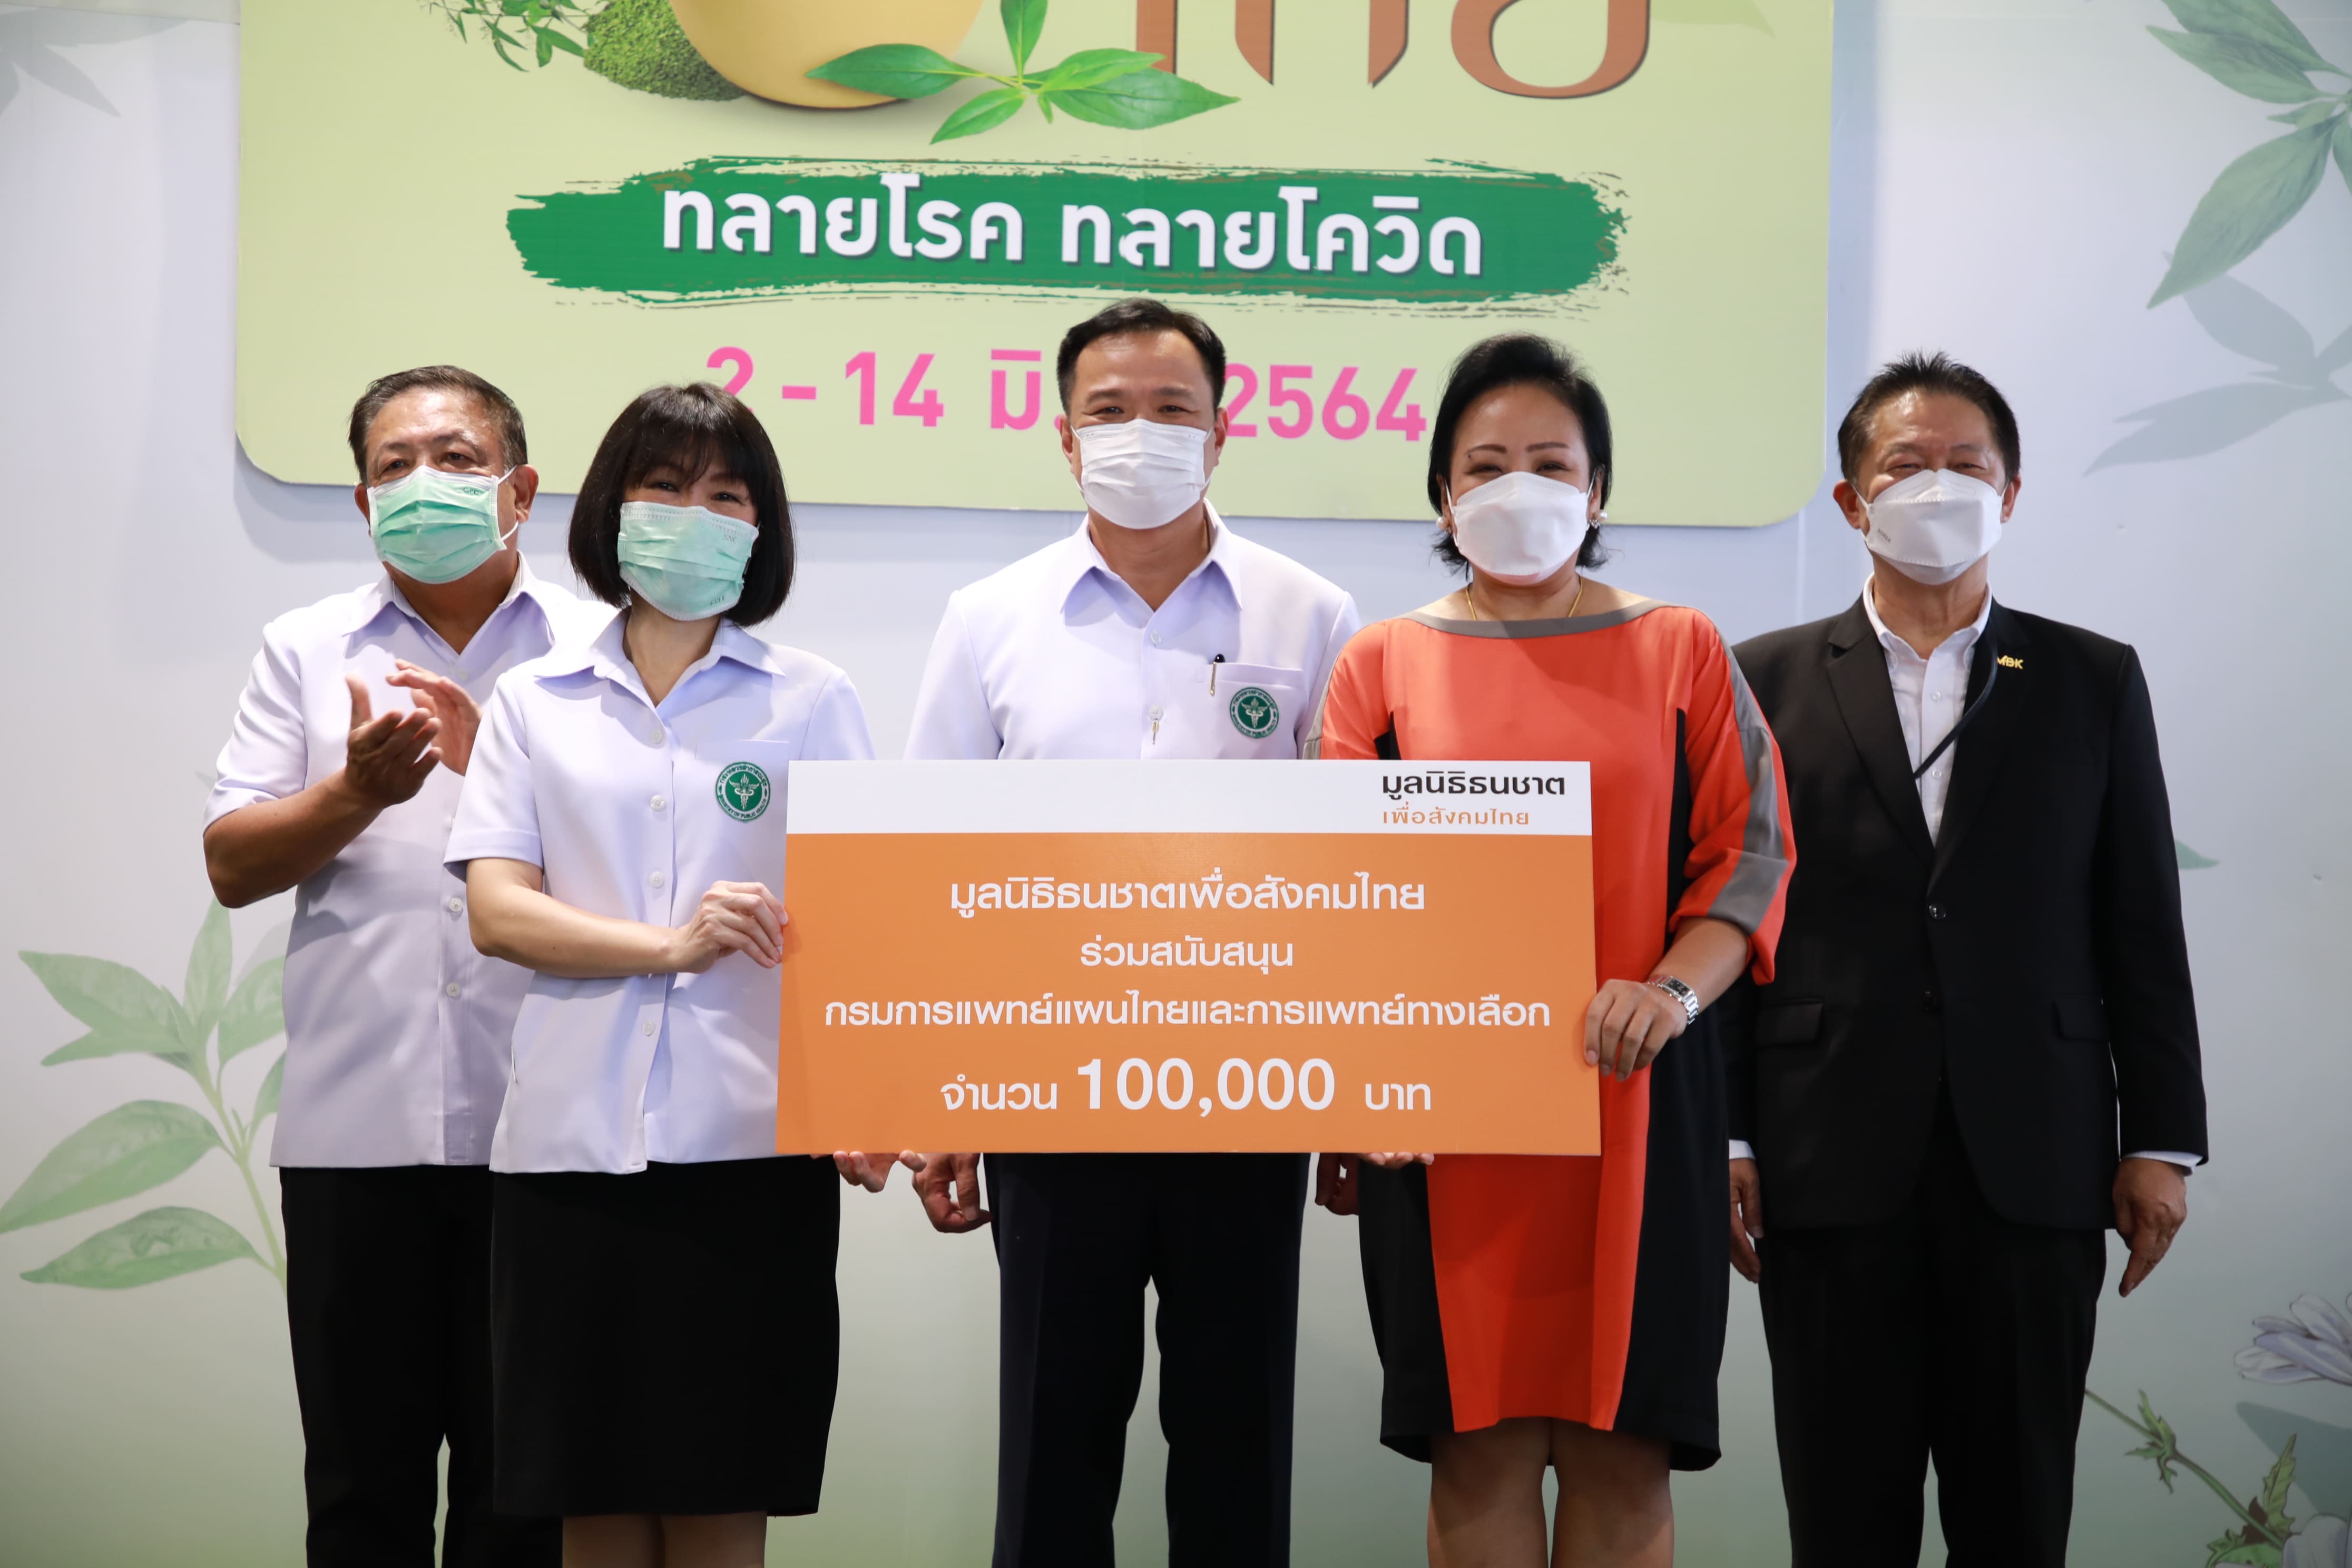 มูลนิธิธนชาตเพื่อสังคมไทย มอบเงิน 100,000 บาท สนับสนุนกรมการแพทย์แผนไทยและการแพทย์ทางเลือกต่อสู้กับการแพร่ระบาดของเชื้อโควิด-19